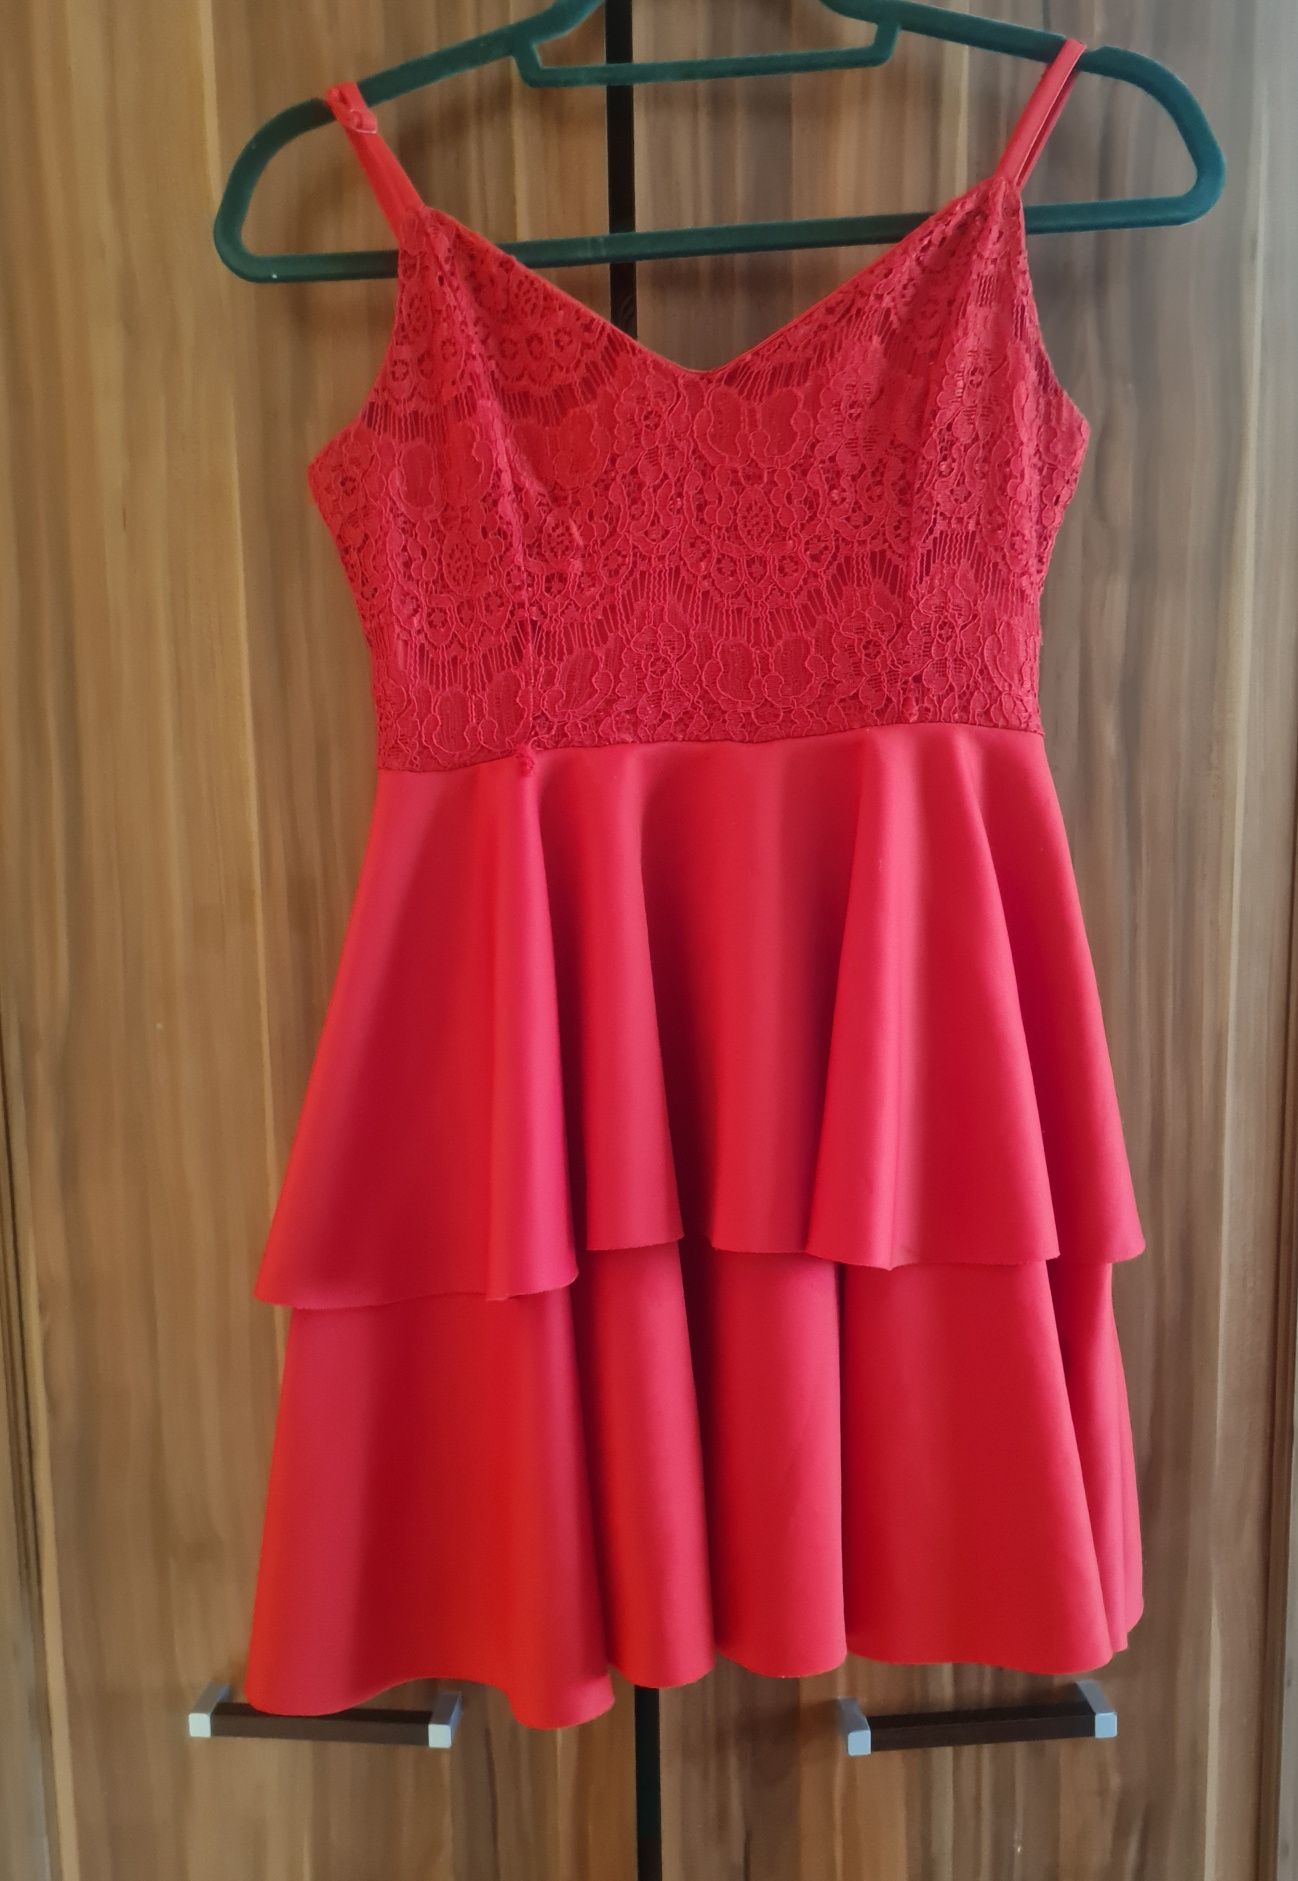 Czerwona sukienka XS